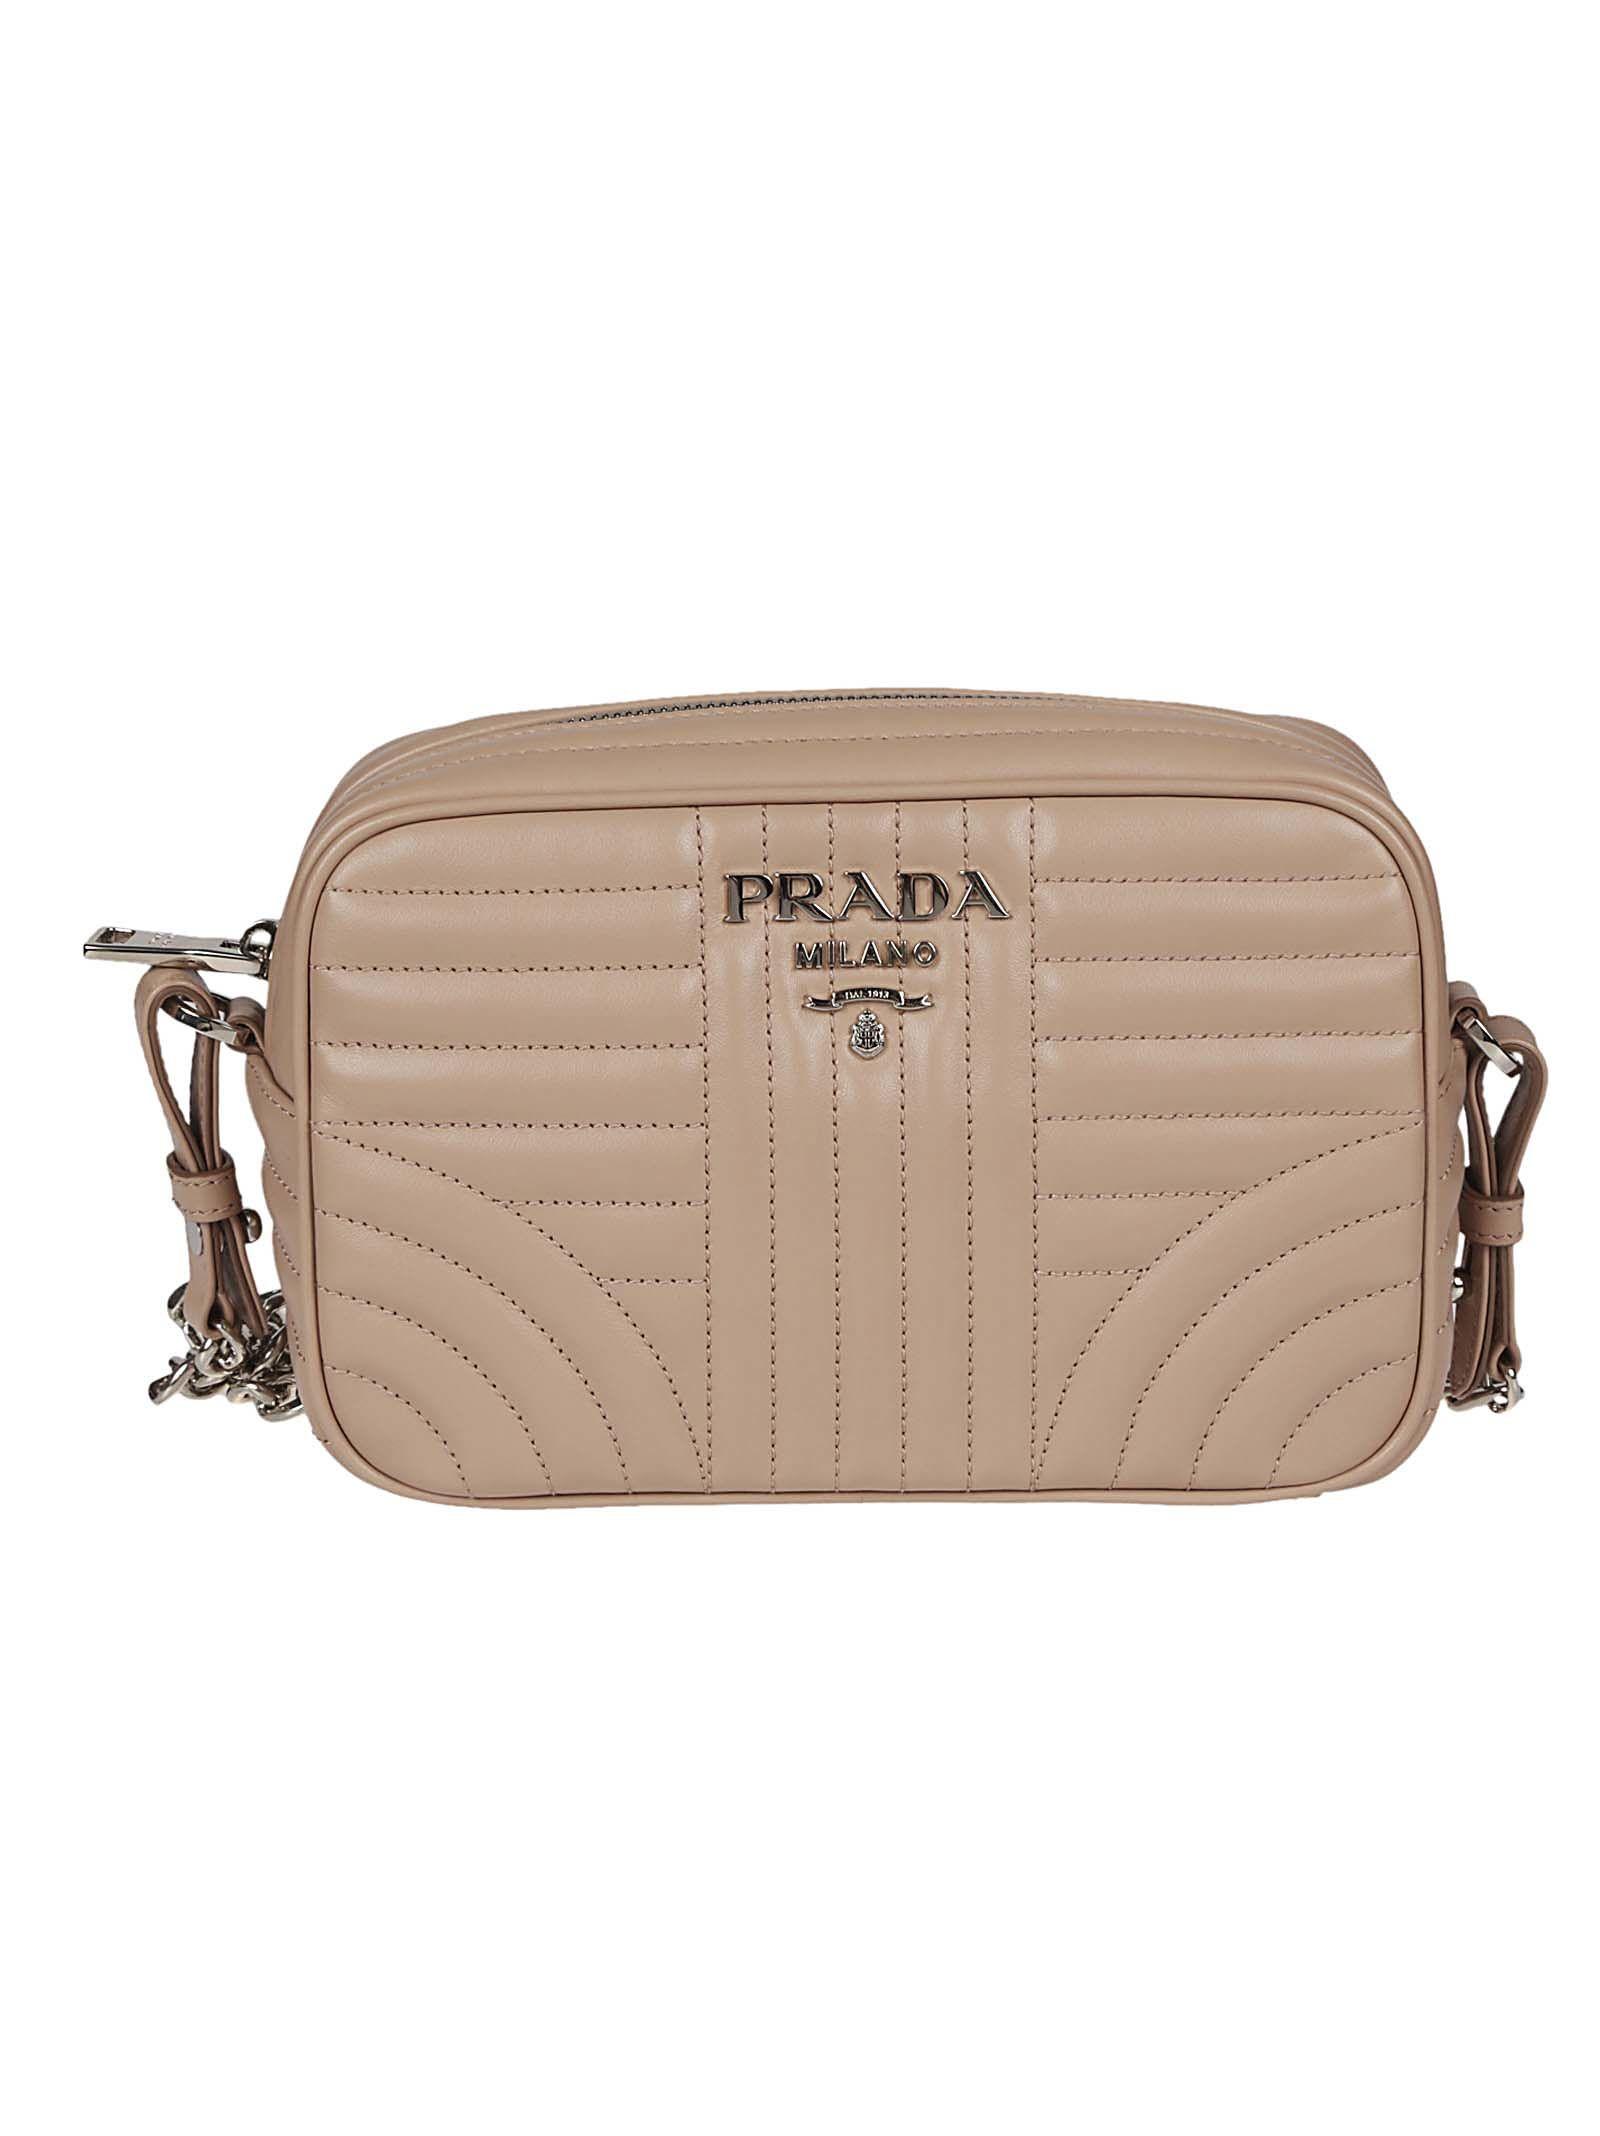 Prada Beveled Camera Shoulder Bag | ModeSens